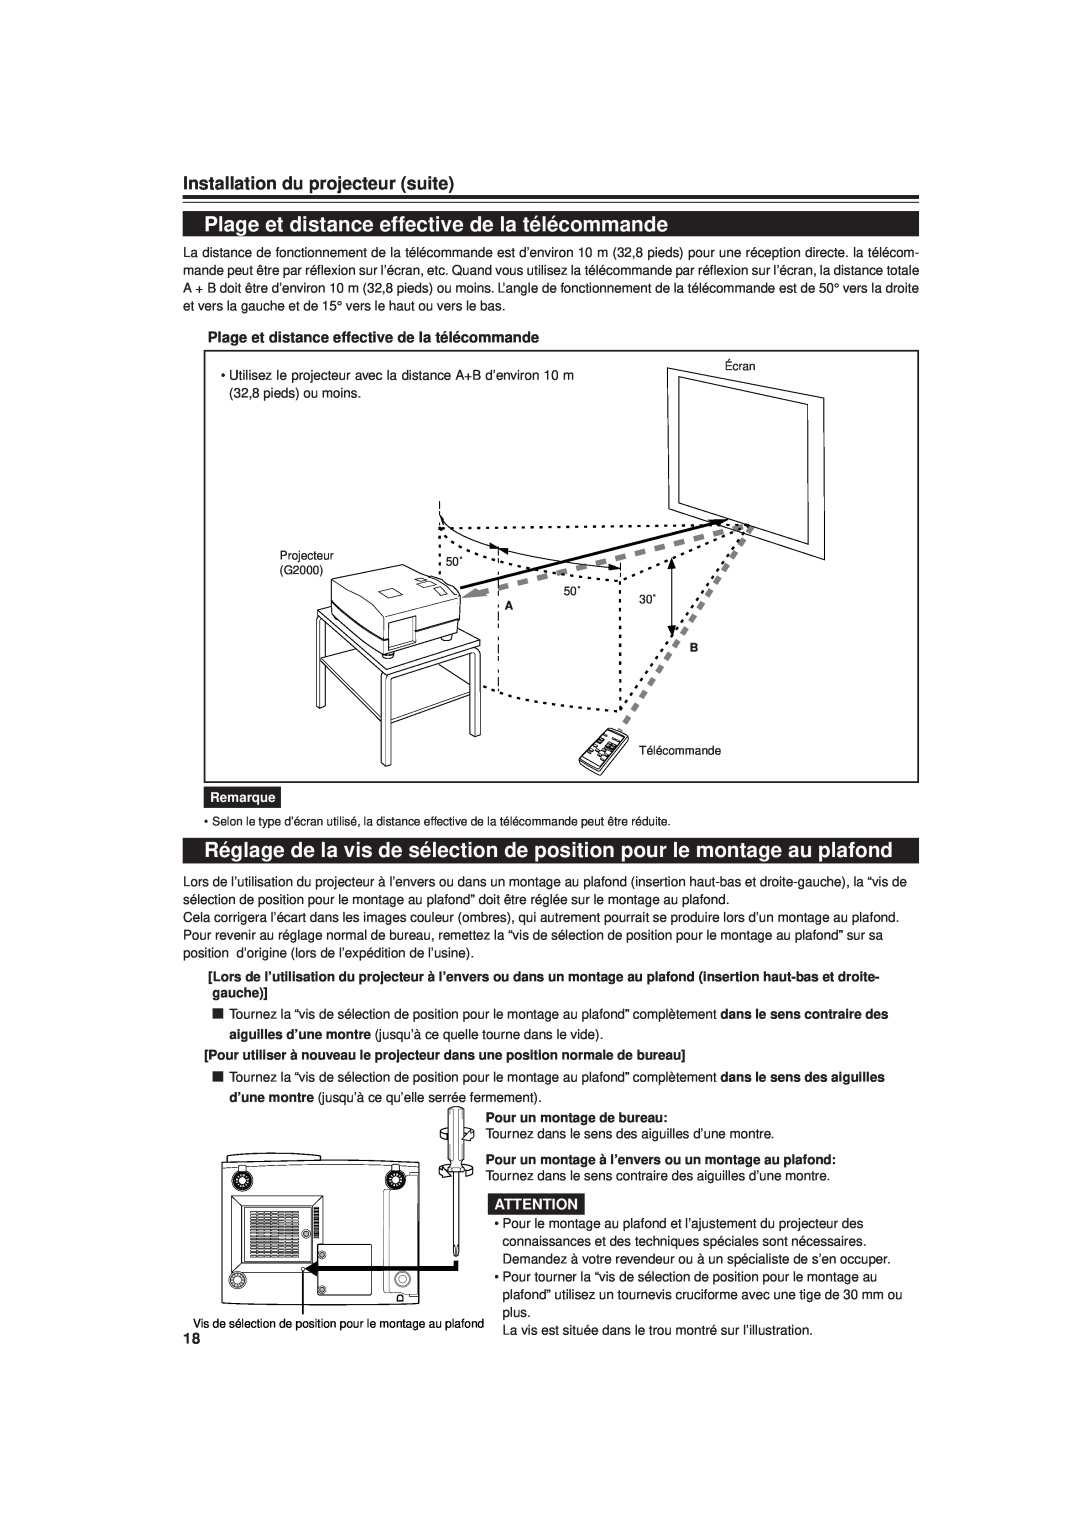 JVC DLA-G20U manual Plage et distance effective de la télécommande, Installation du projecteur suite, Remarque 